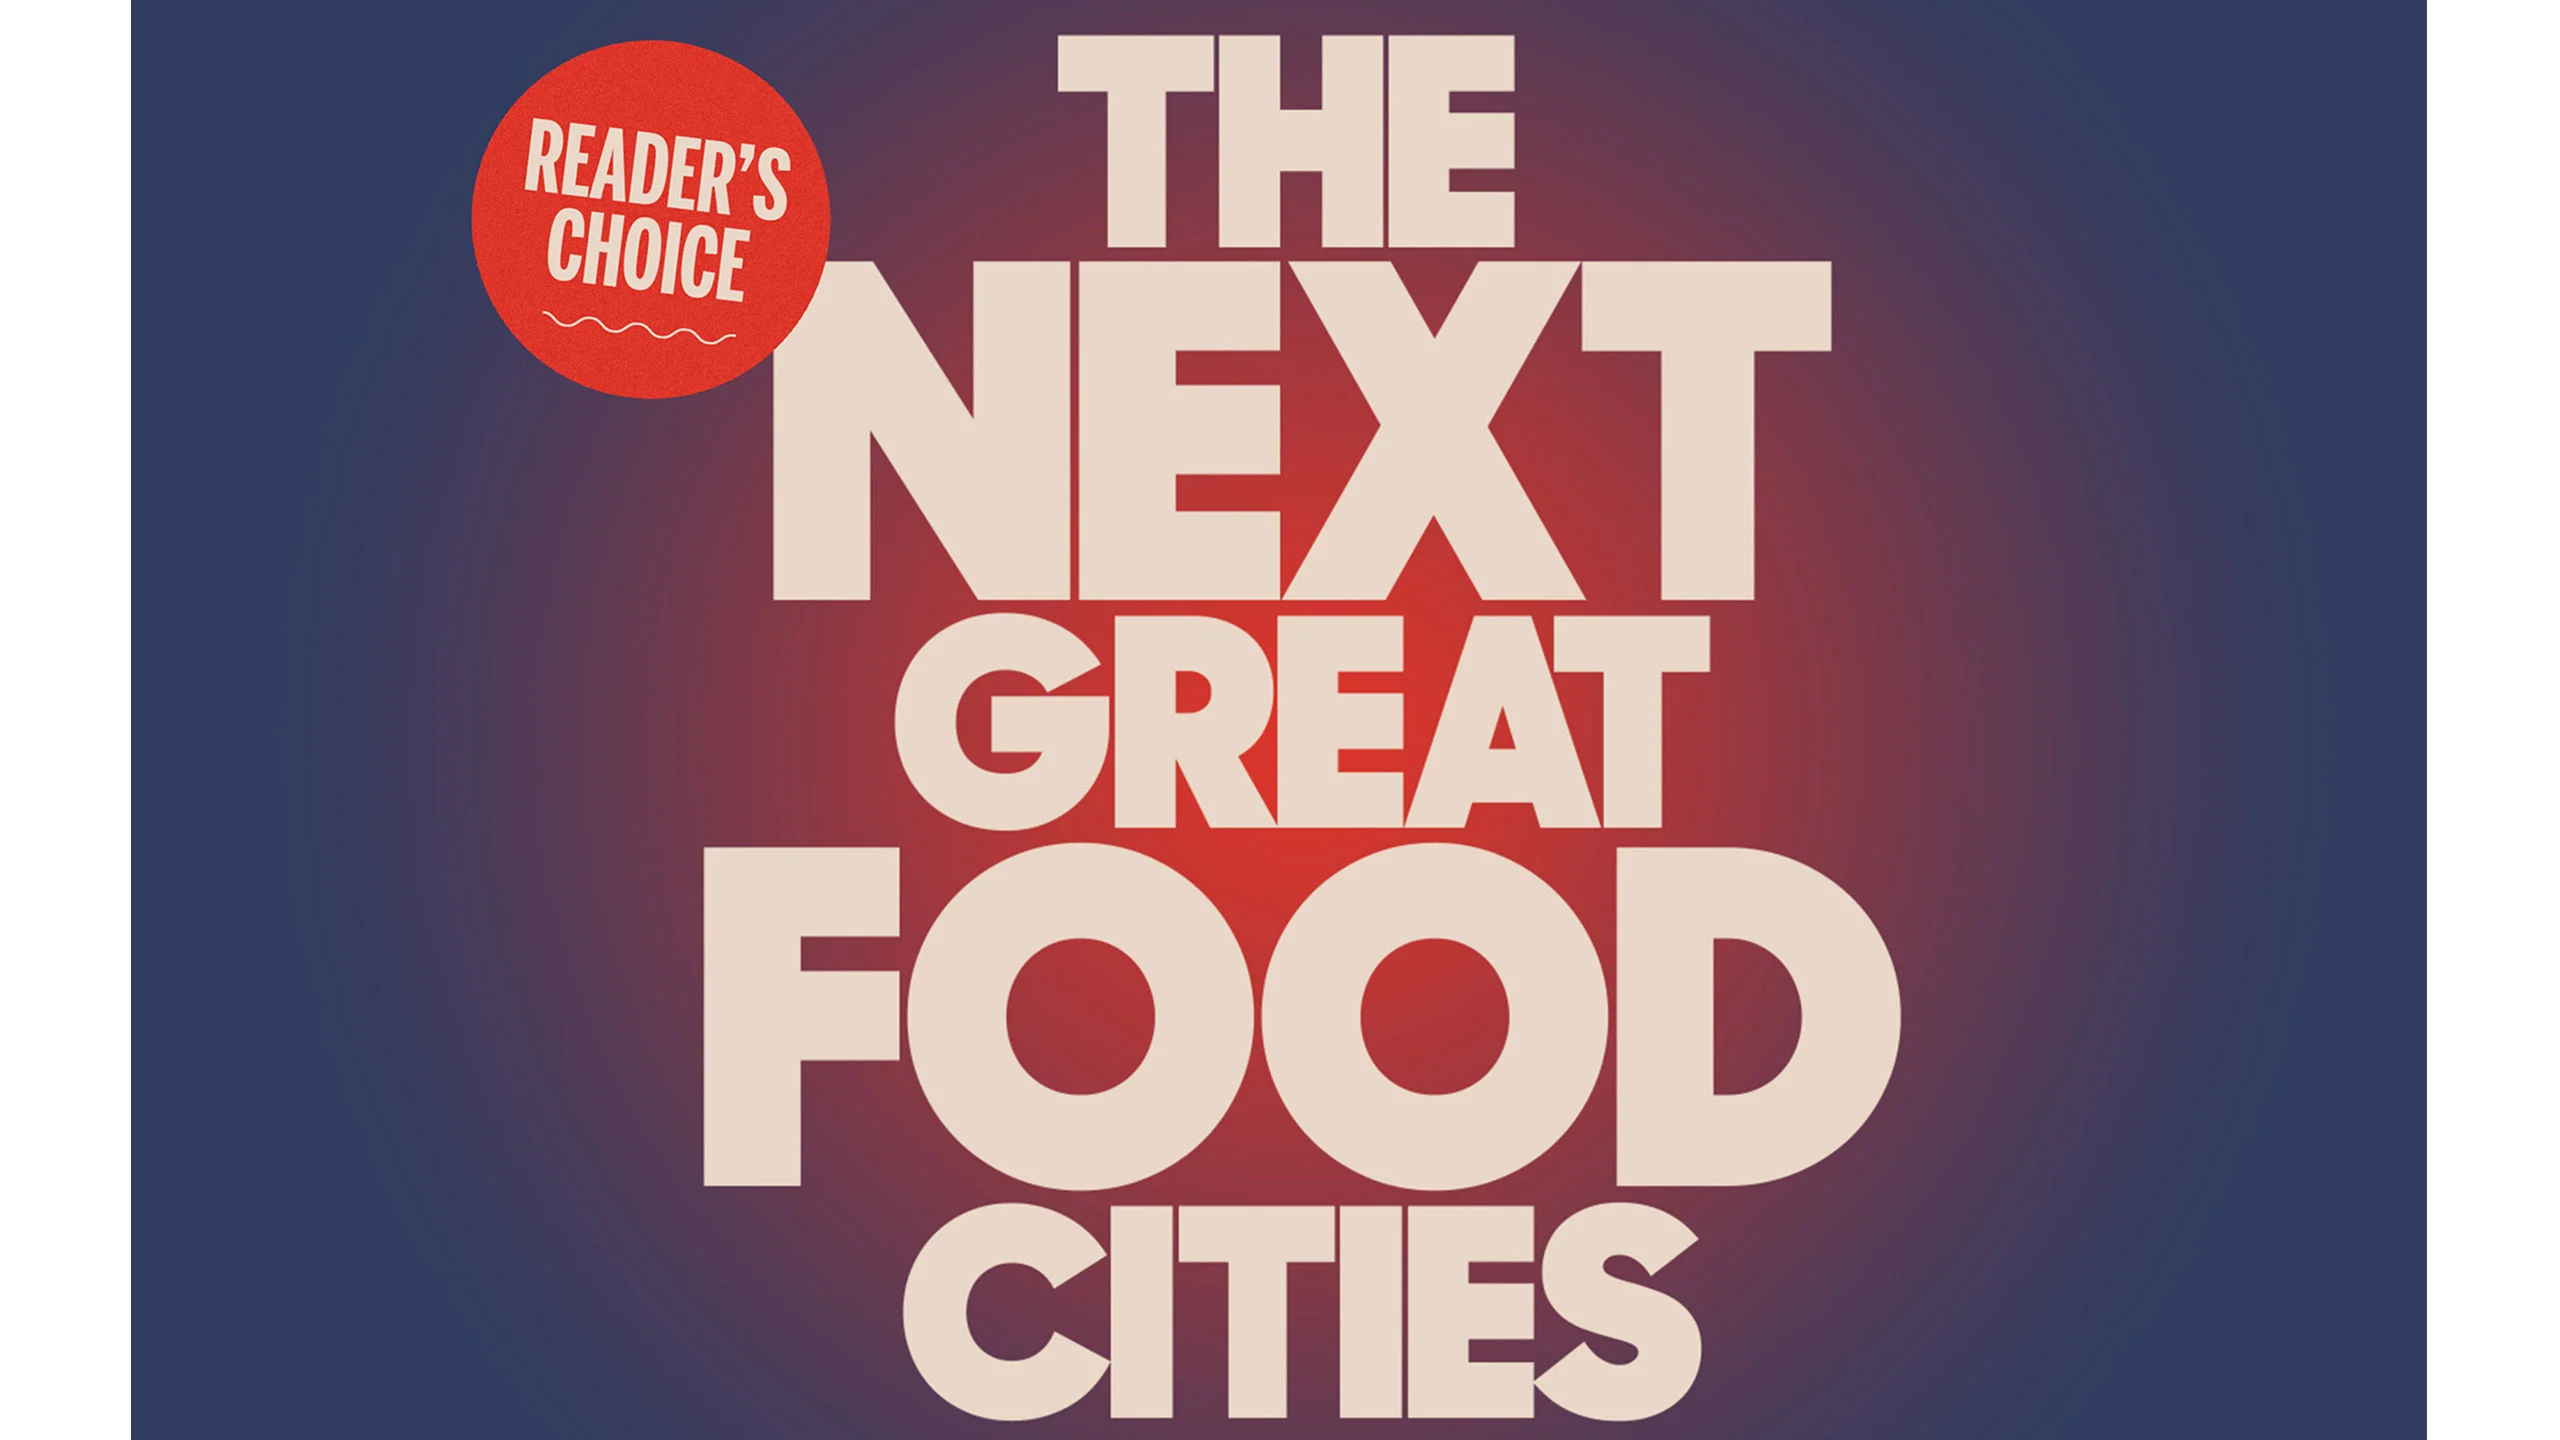 St. Louis: la próxima mejor ciudad gastronómica, según nuestros lectores